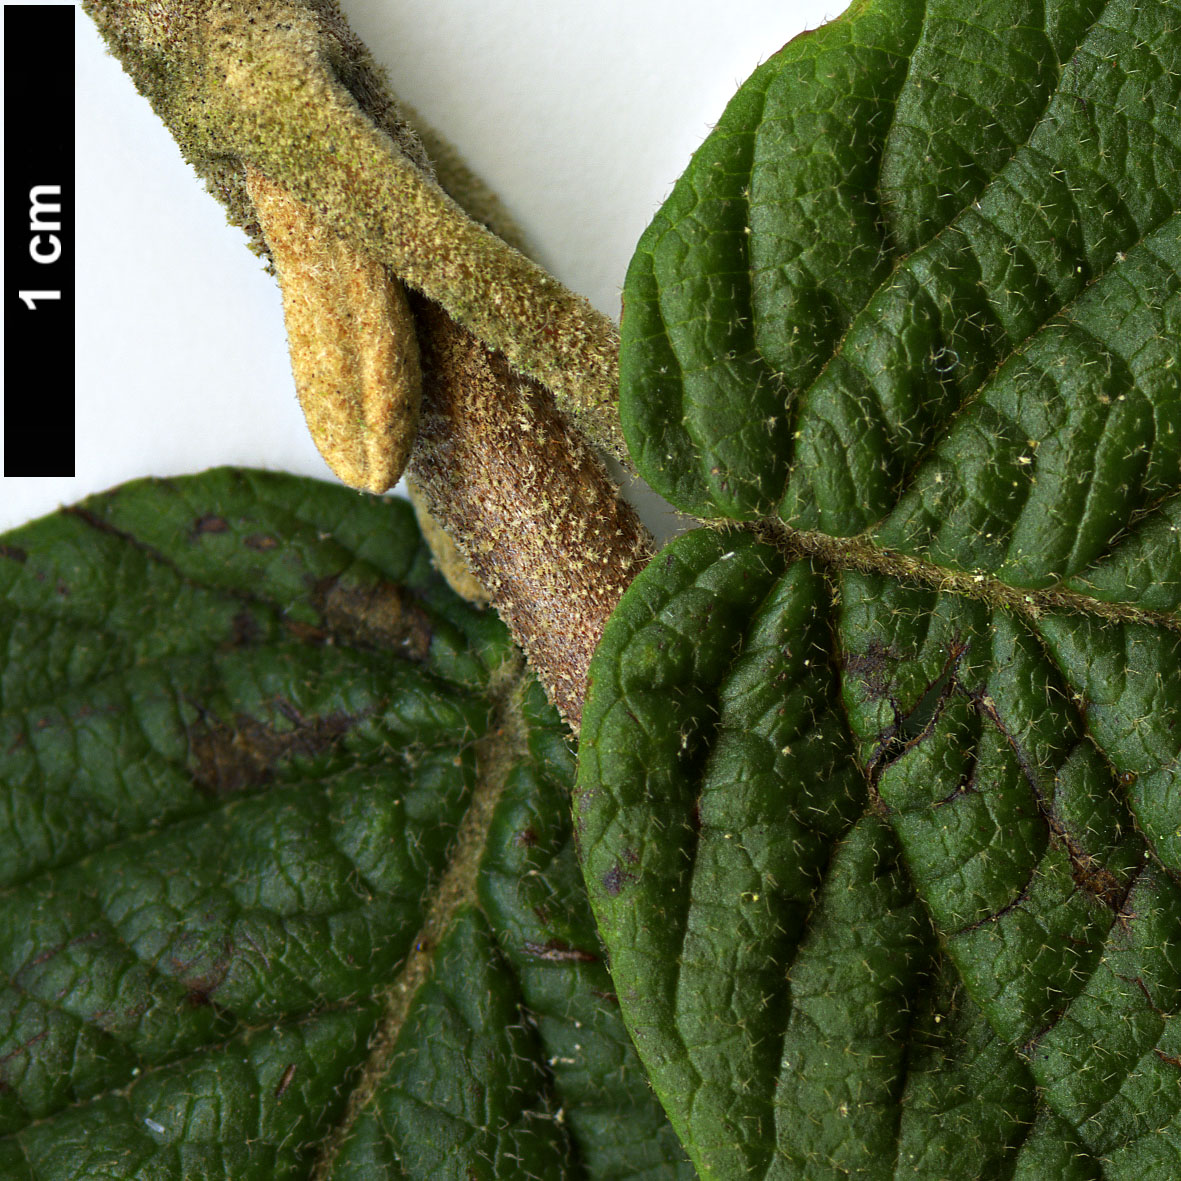 High resolution image: Family: Adoxaceae - Genus: Viburnum - Taxon: glomeratum - SpeciesSub: subsp. glomeratum